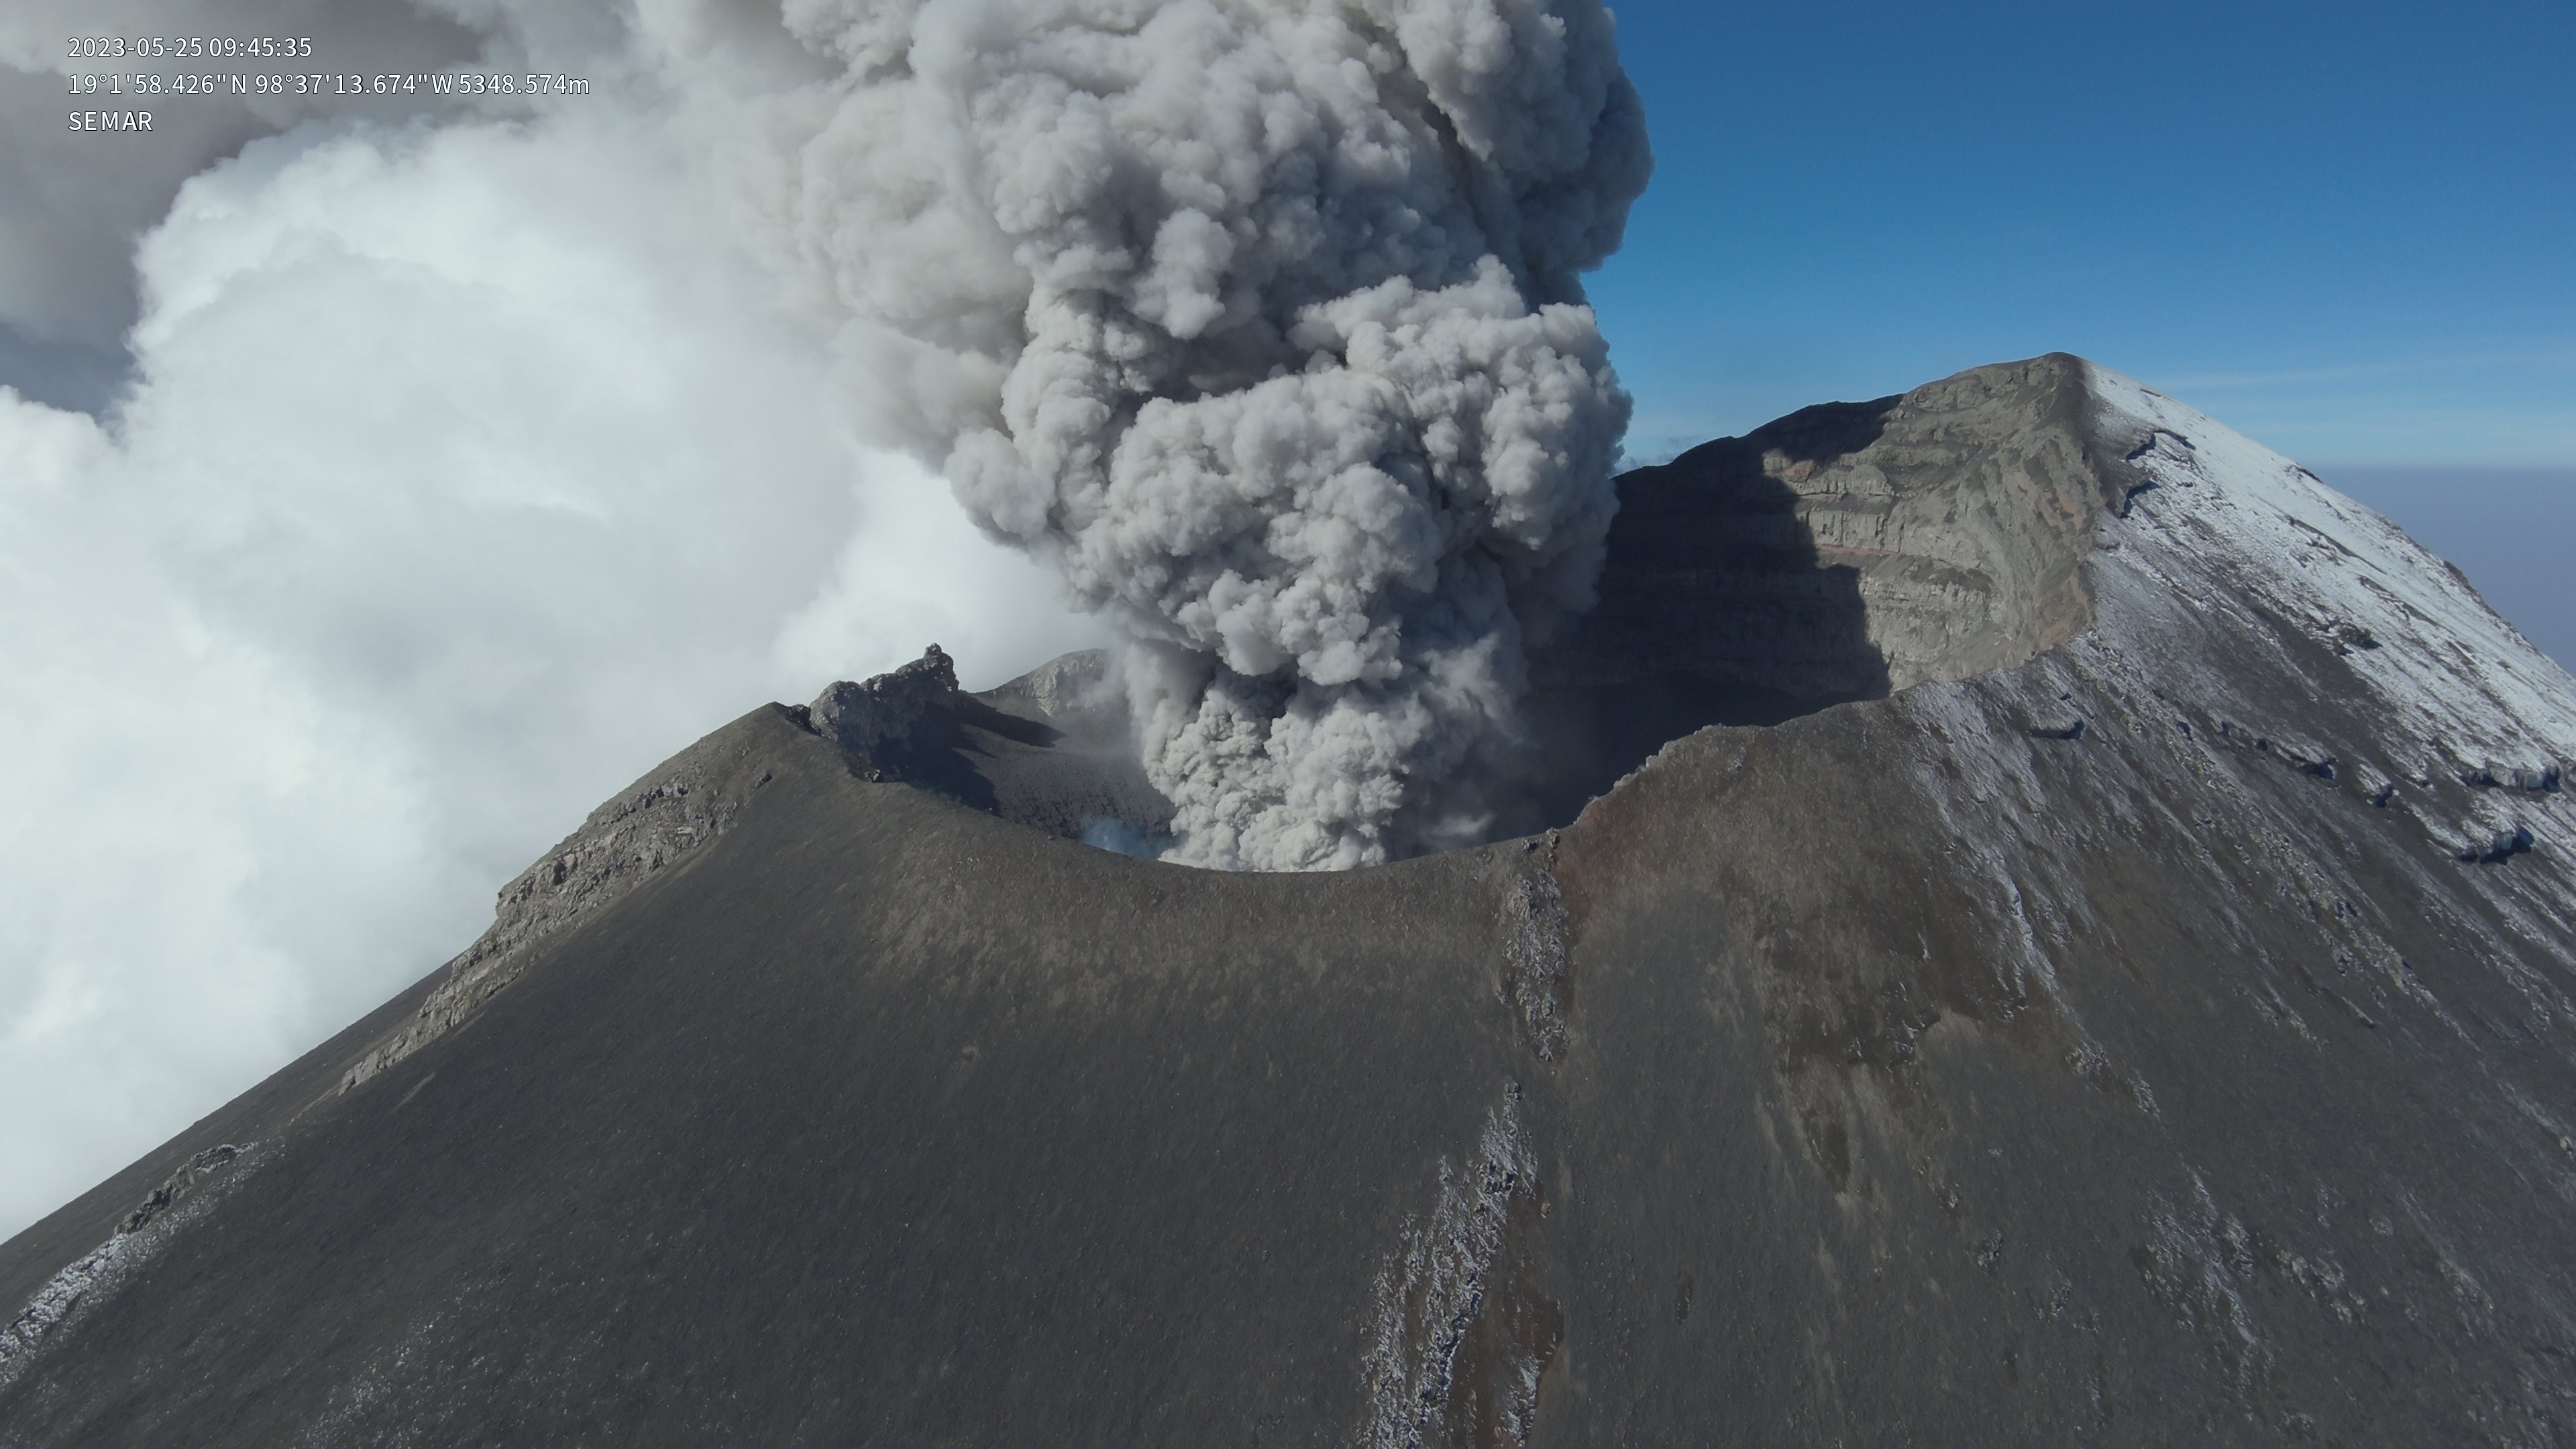 Volcán Popocatépetl hoy 29 de mayo: Estos son los lugares a donde podría dirigirse la ceniza en caso de alguna emisión